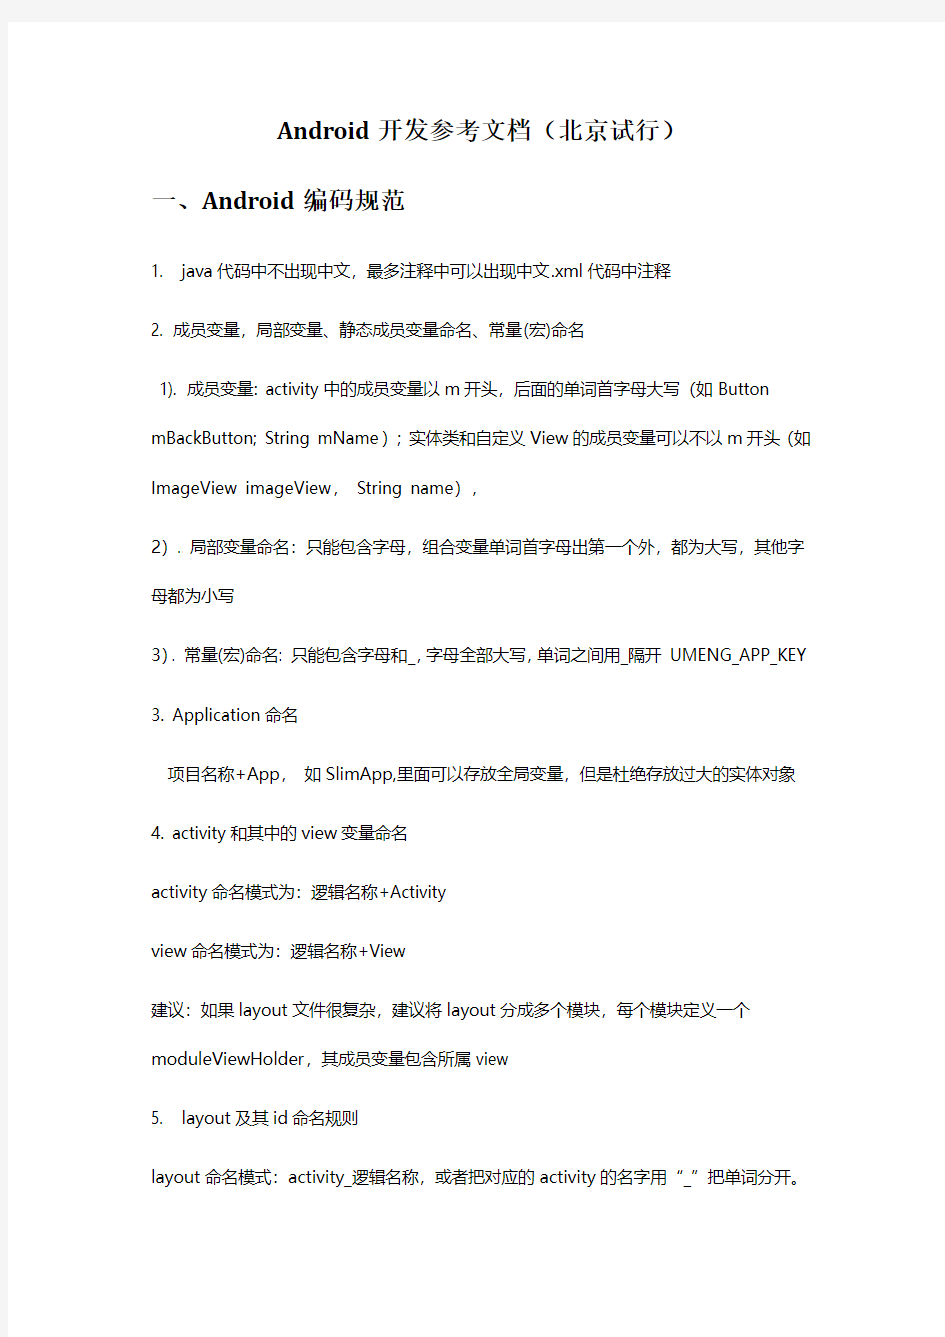 Android开发规范参考文档(北京试行)